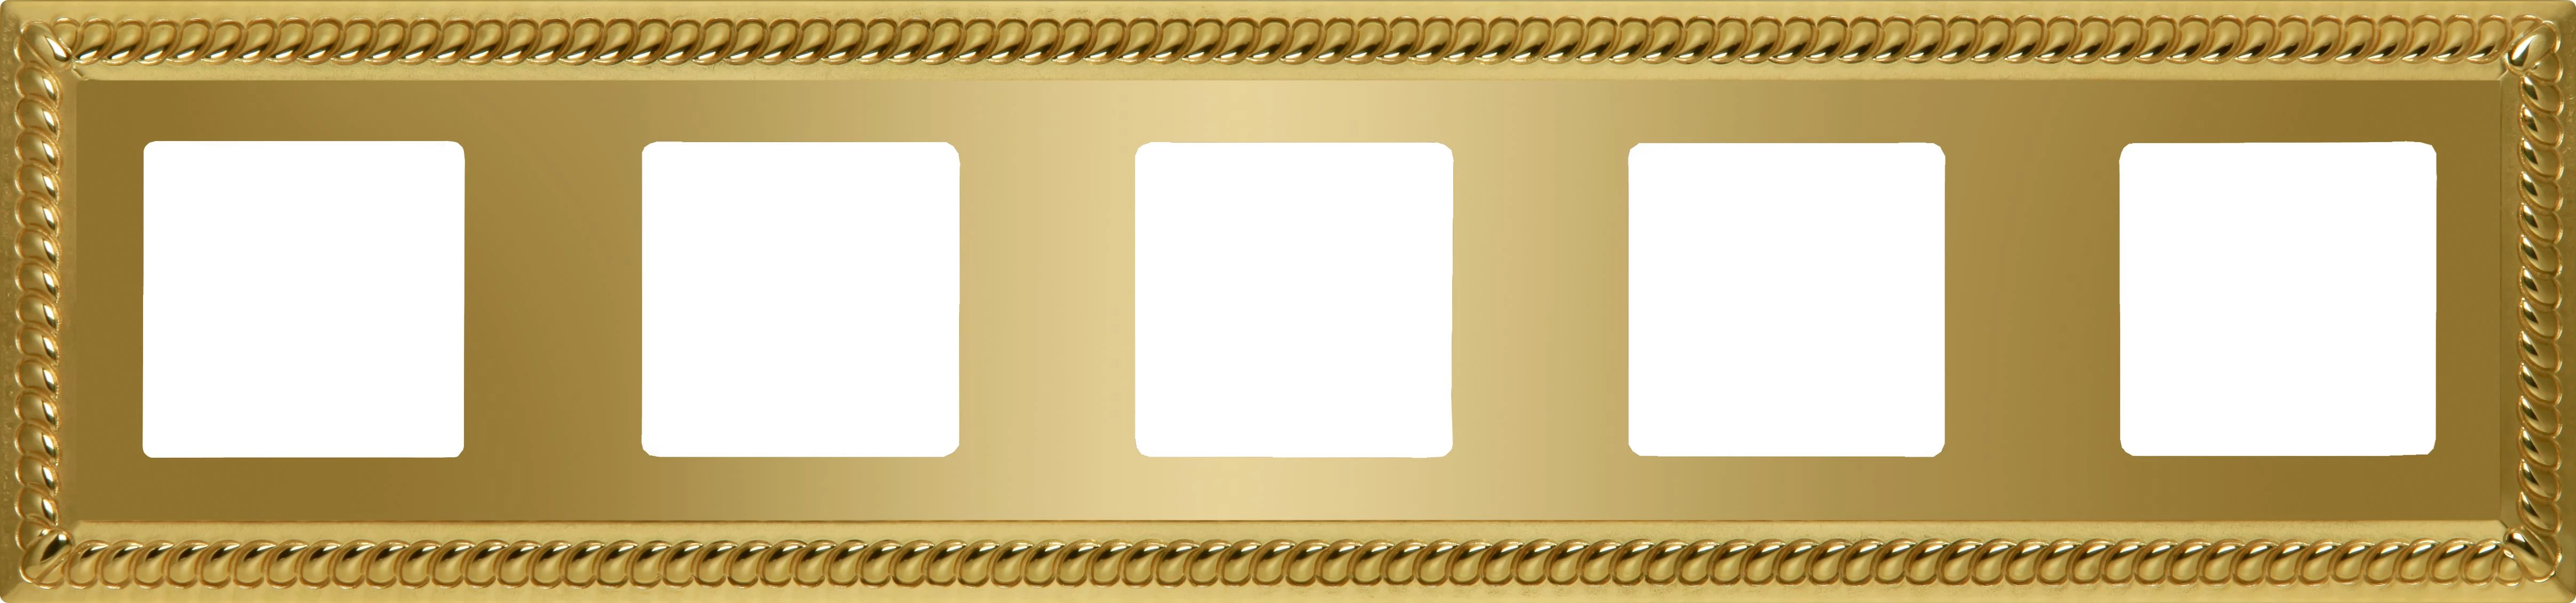  артикул FD01235OB название Рамка 5-ая (пятерная), цвет Светлое золото, Sevilla, Fede